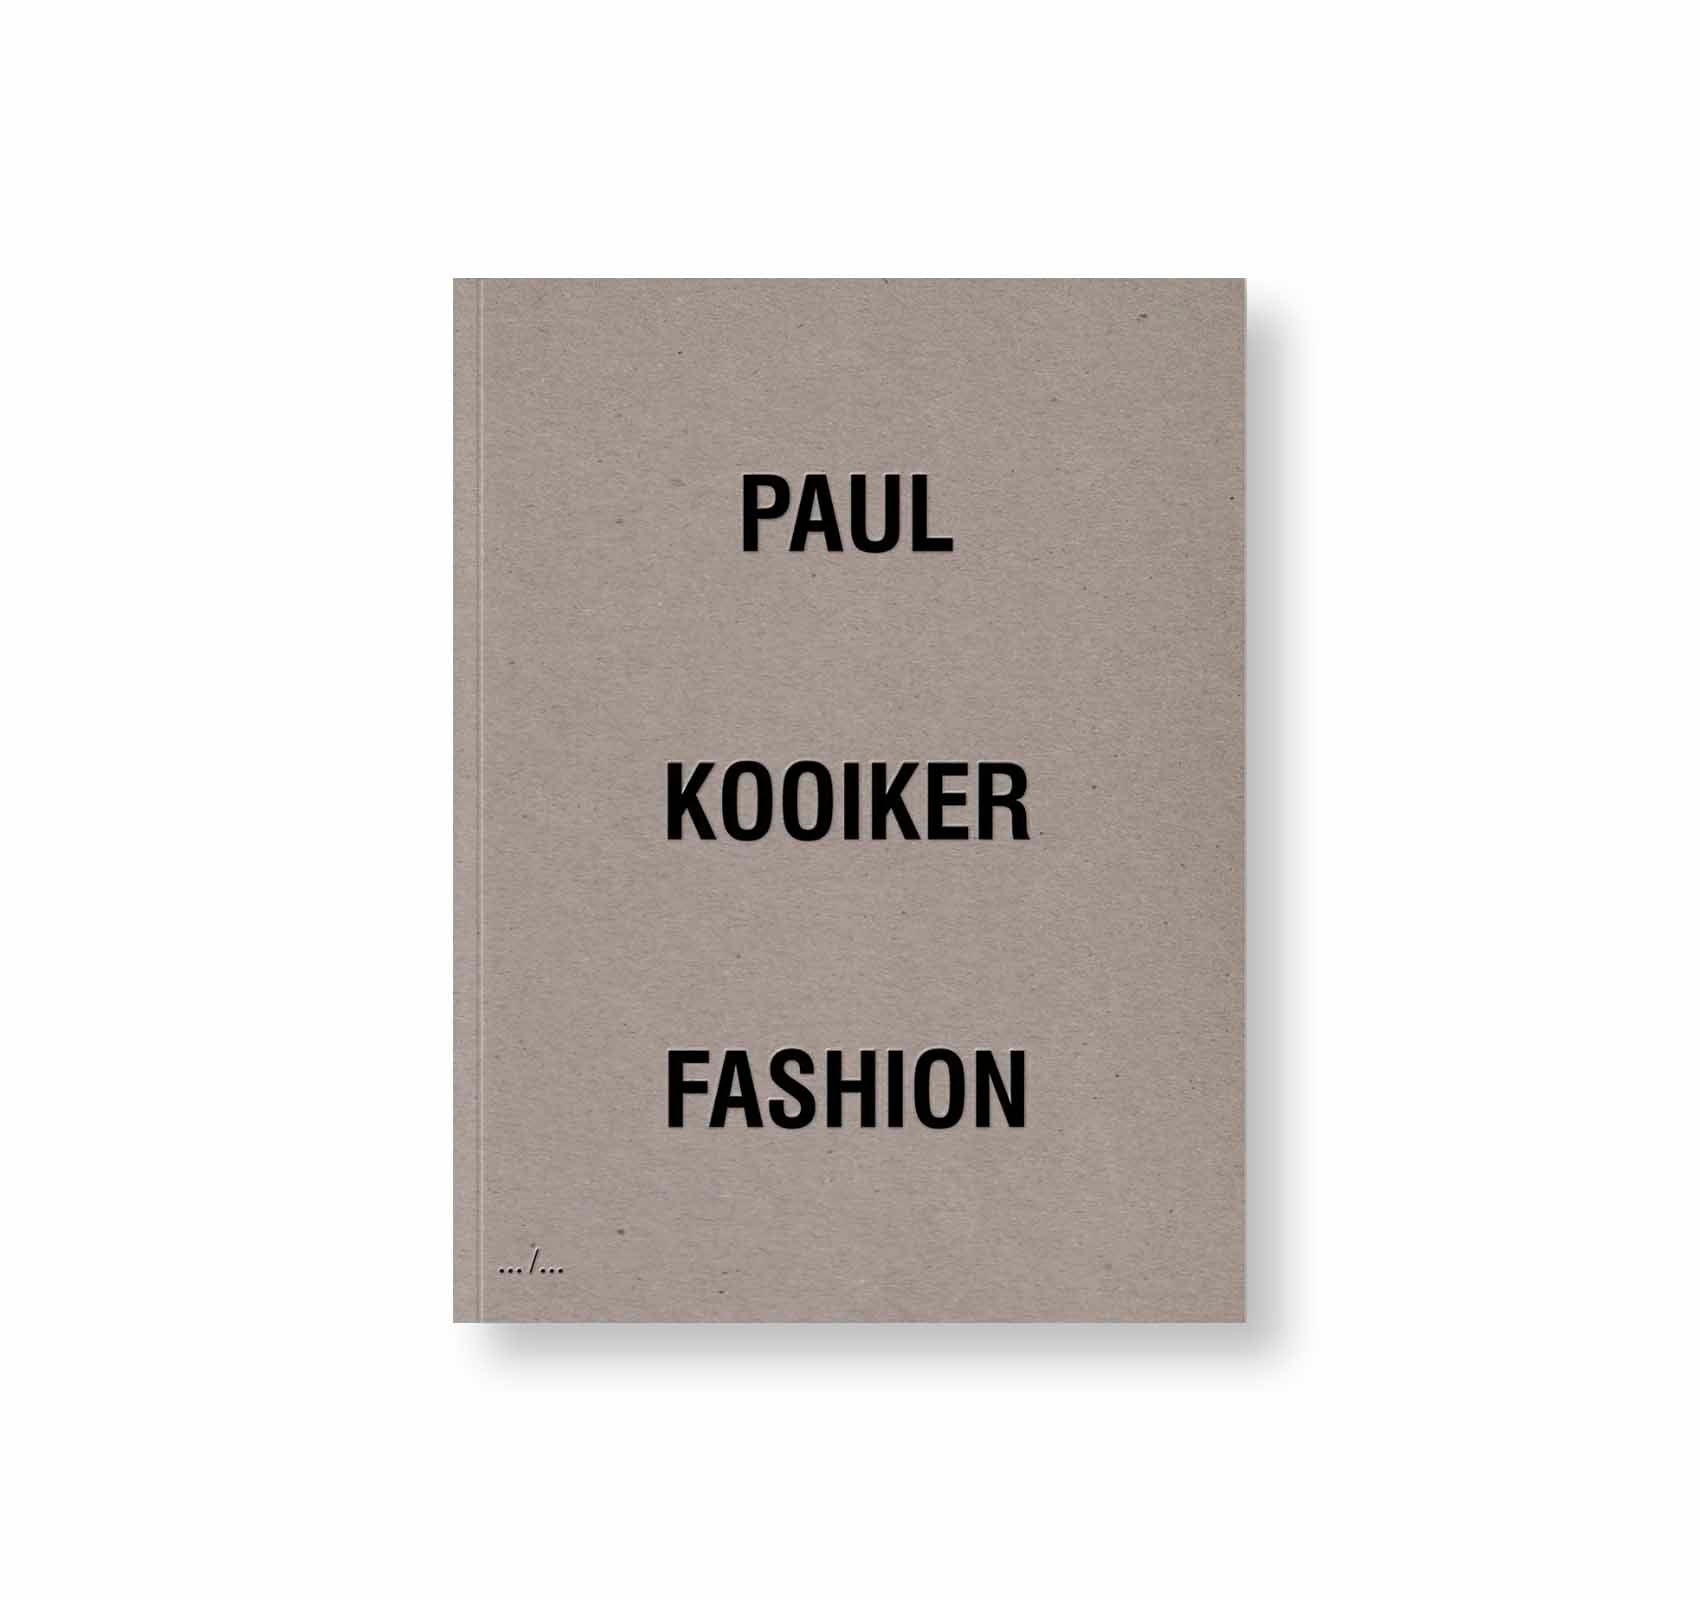 FASHION by Paul Kooiker